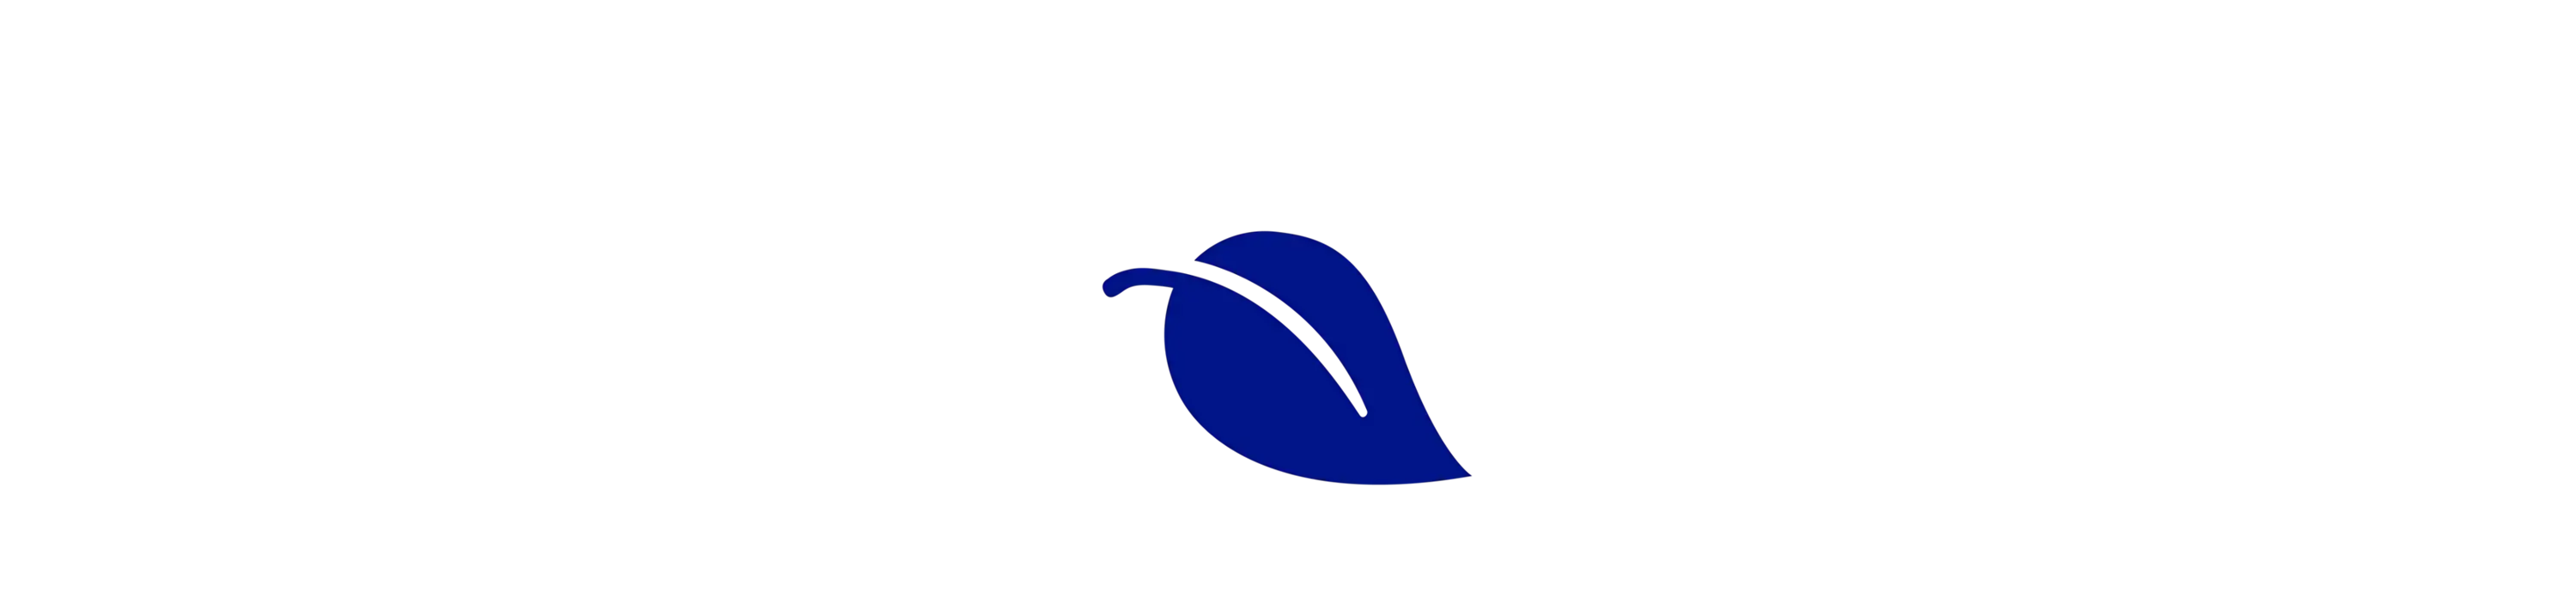 logo de la feuille